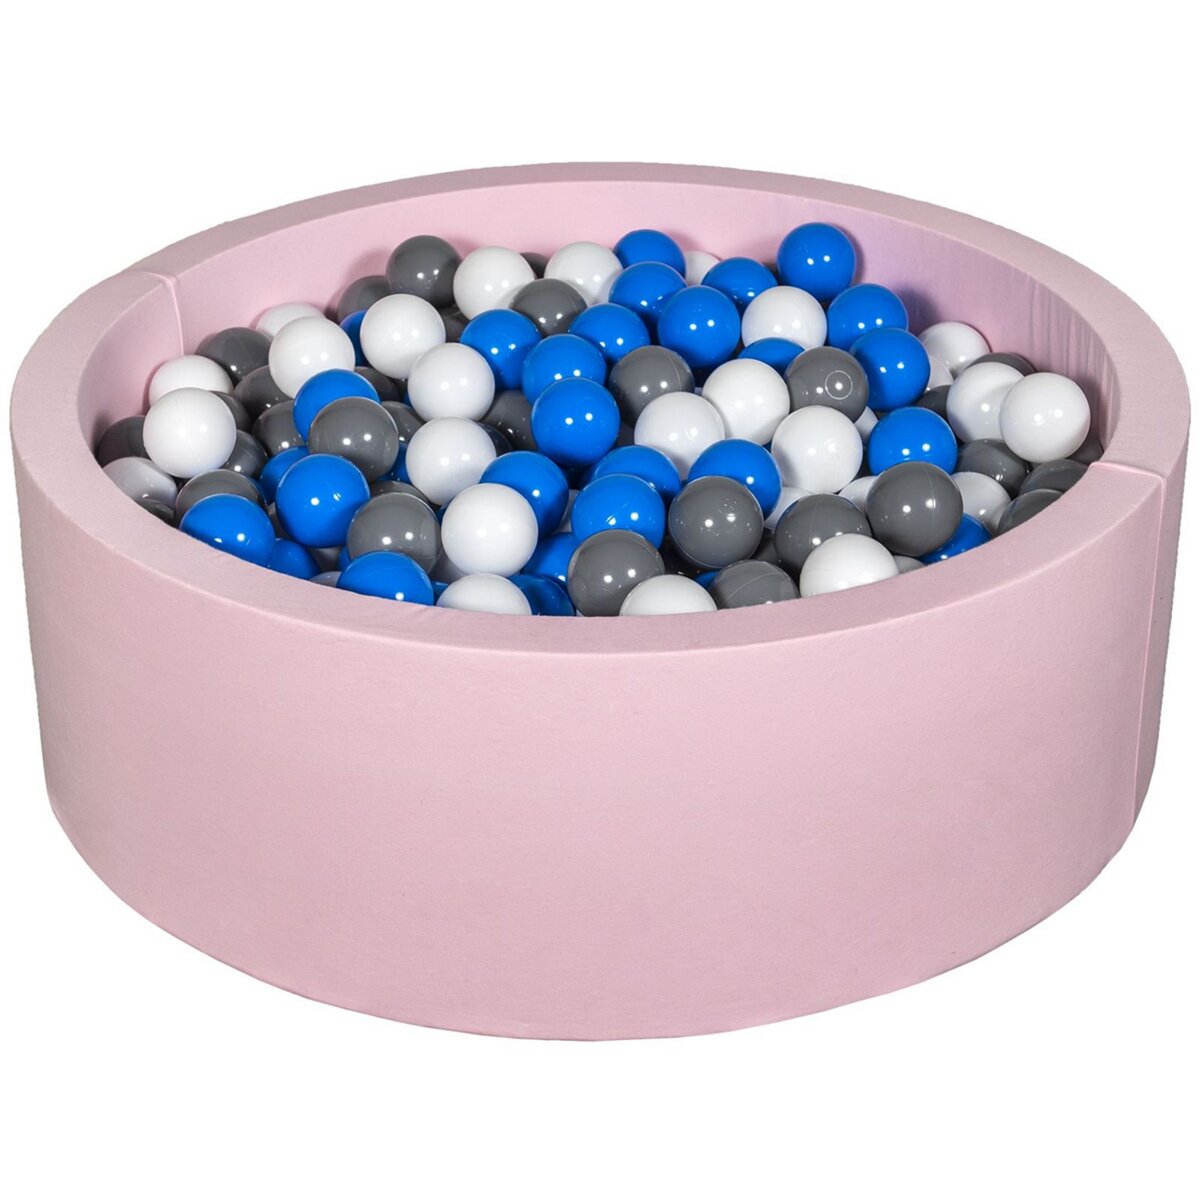  Piscine à balles Aire de jeu + 450 balles rose blanc,bleu,gris